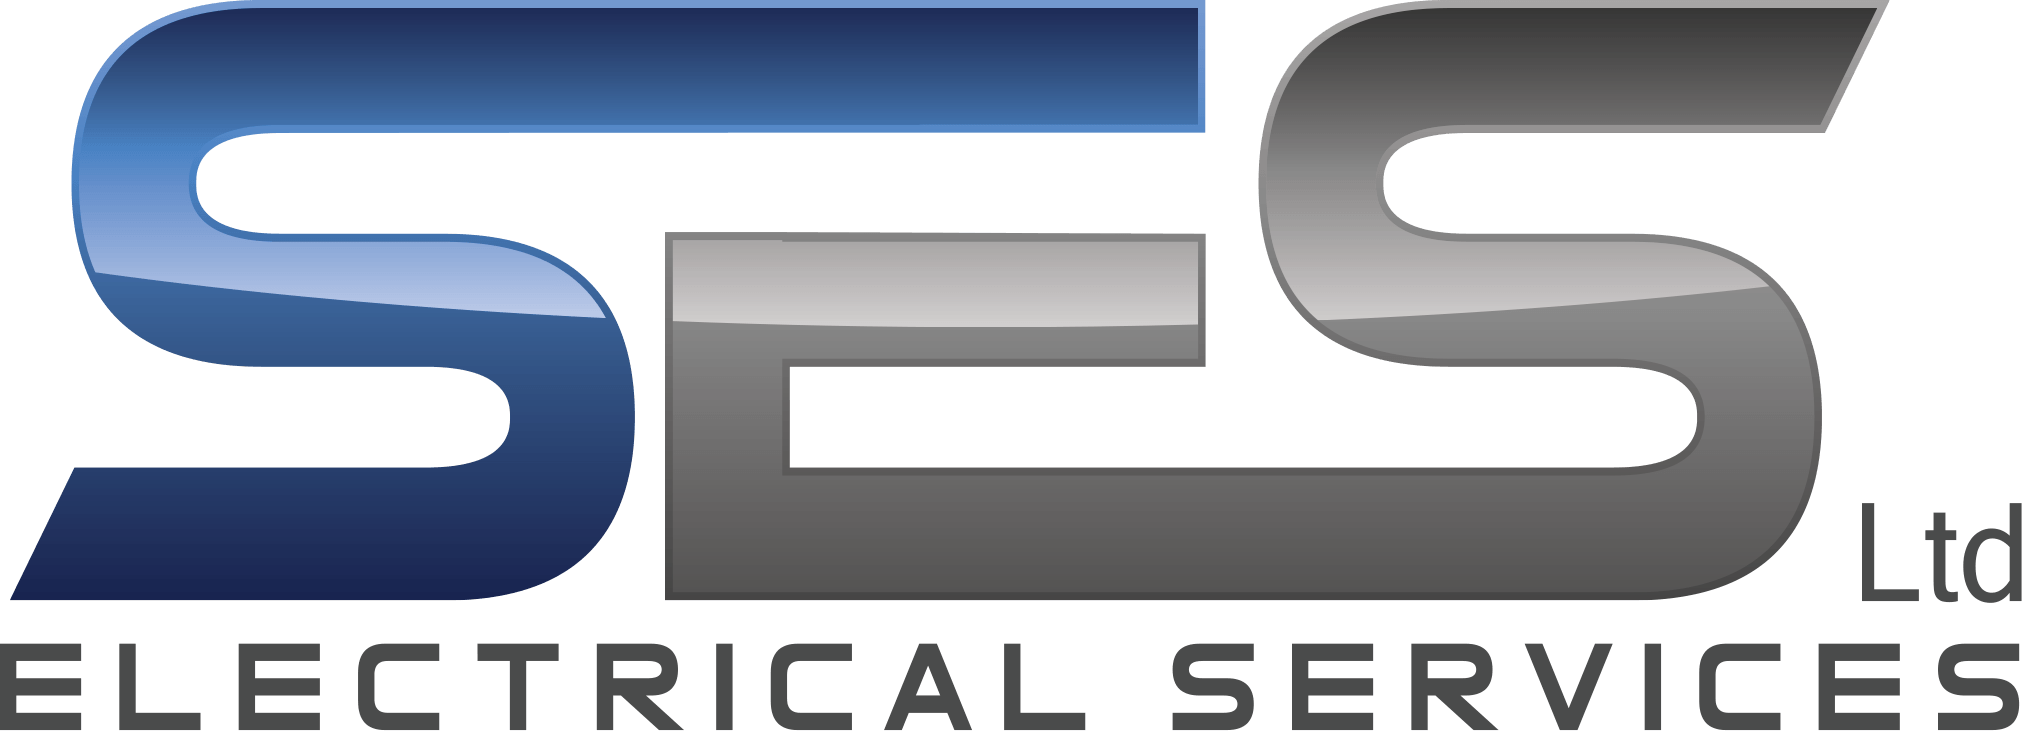 Ses Logo - SES LTD Electrical Services. Solar. Audio